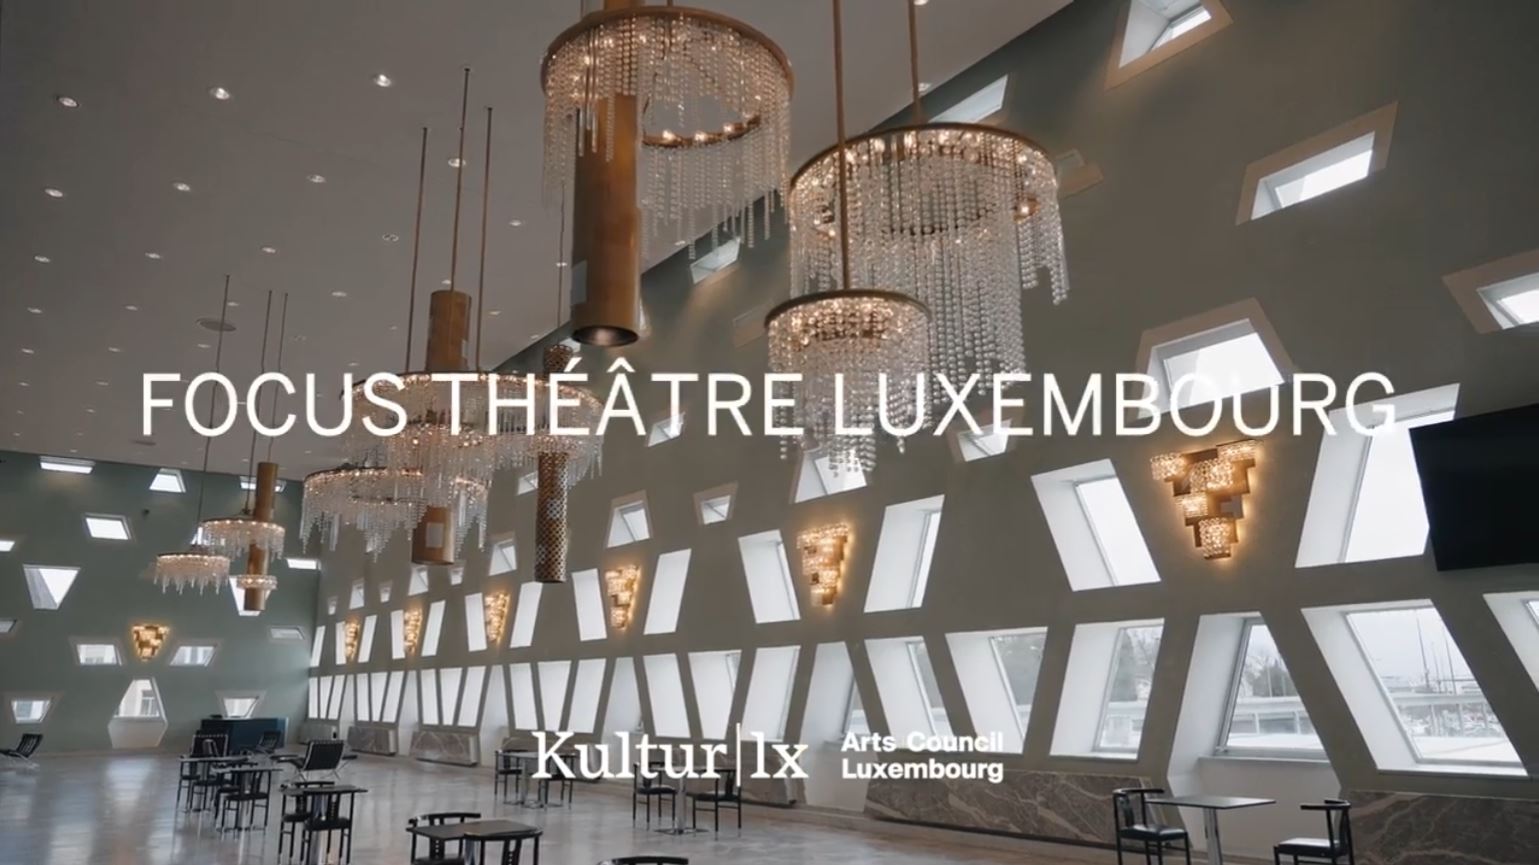 Retour sur un premier temps fort théâtre au Luxembourg